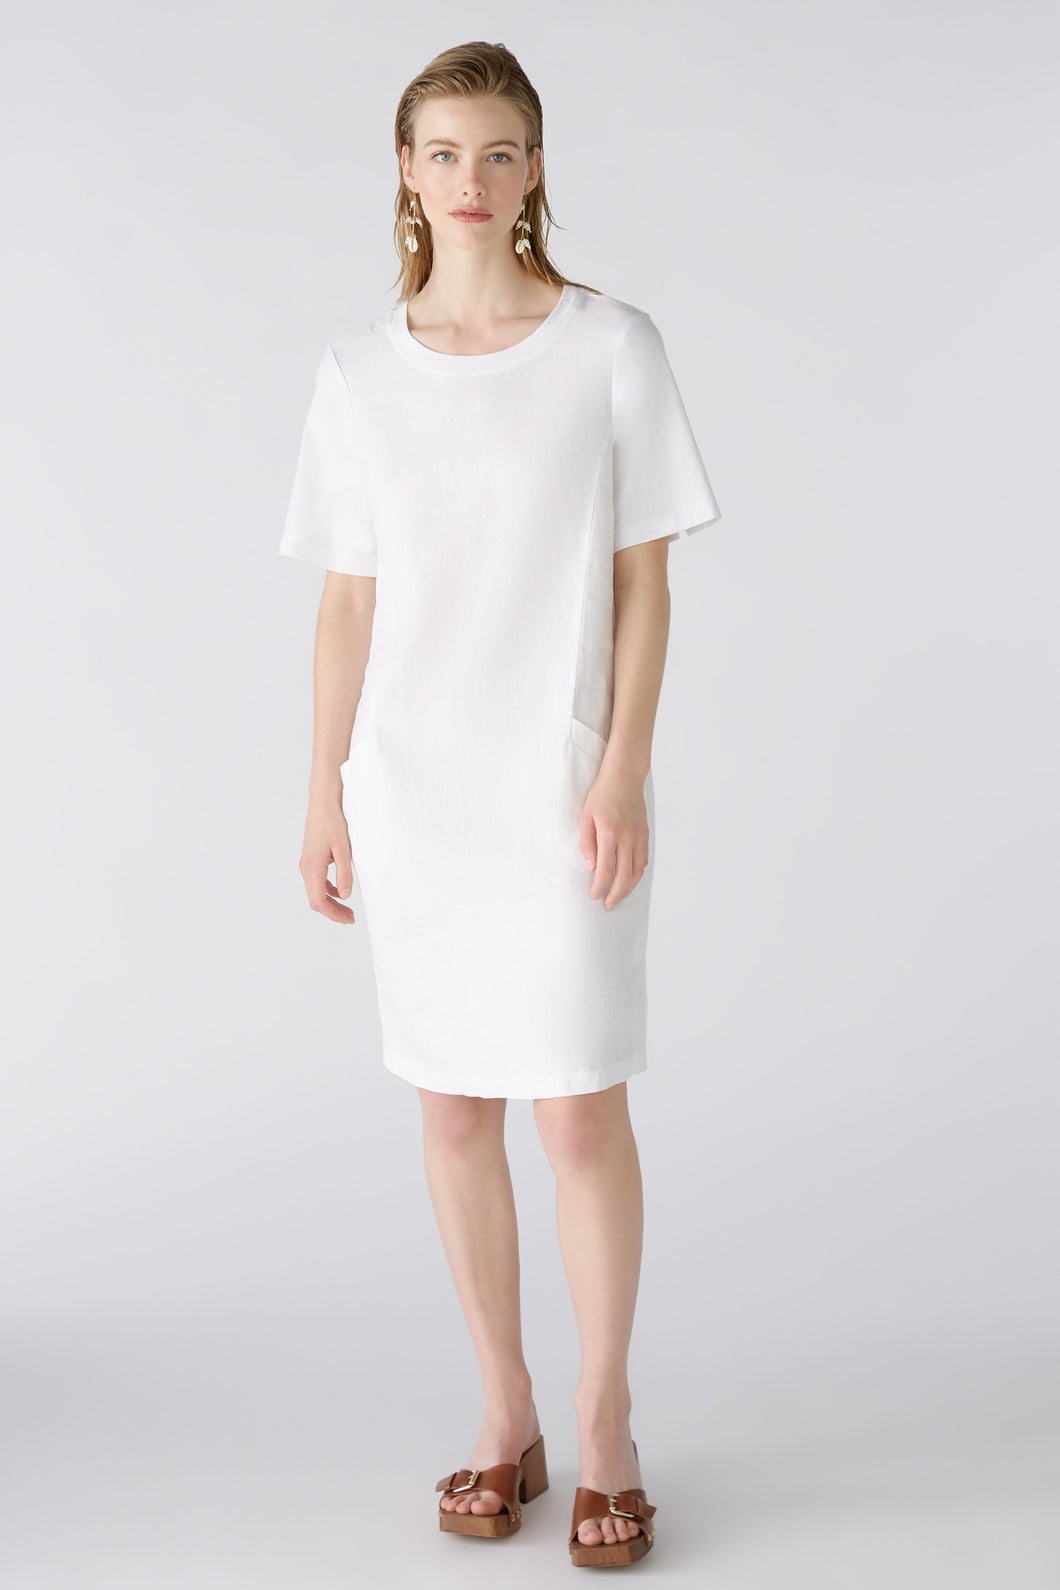 Oui - Linen Dress in White